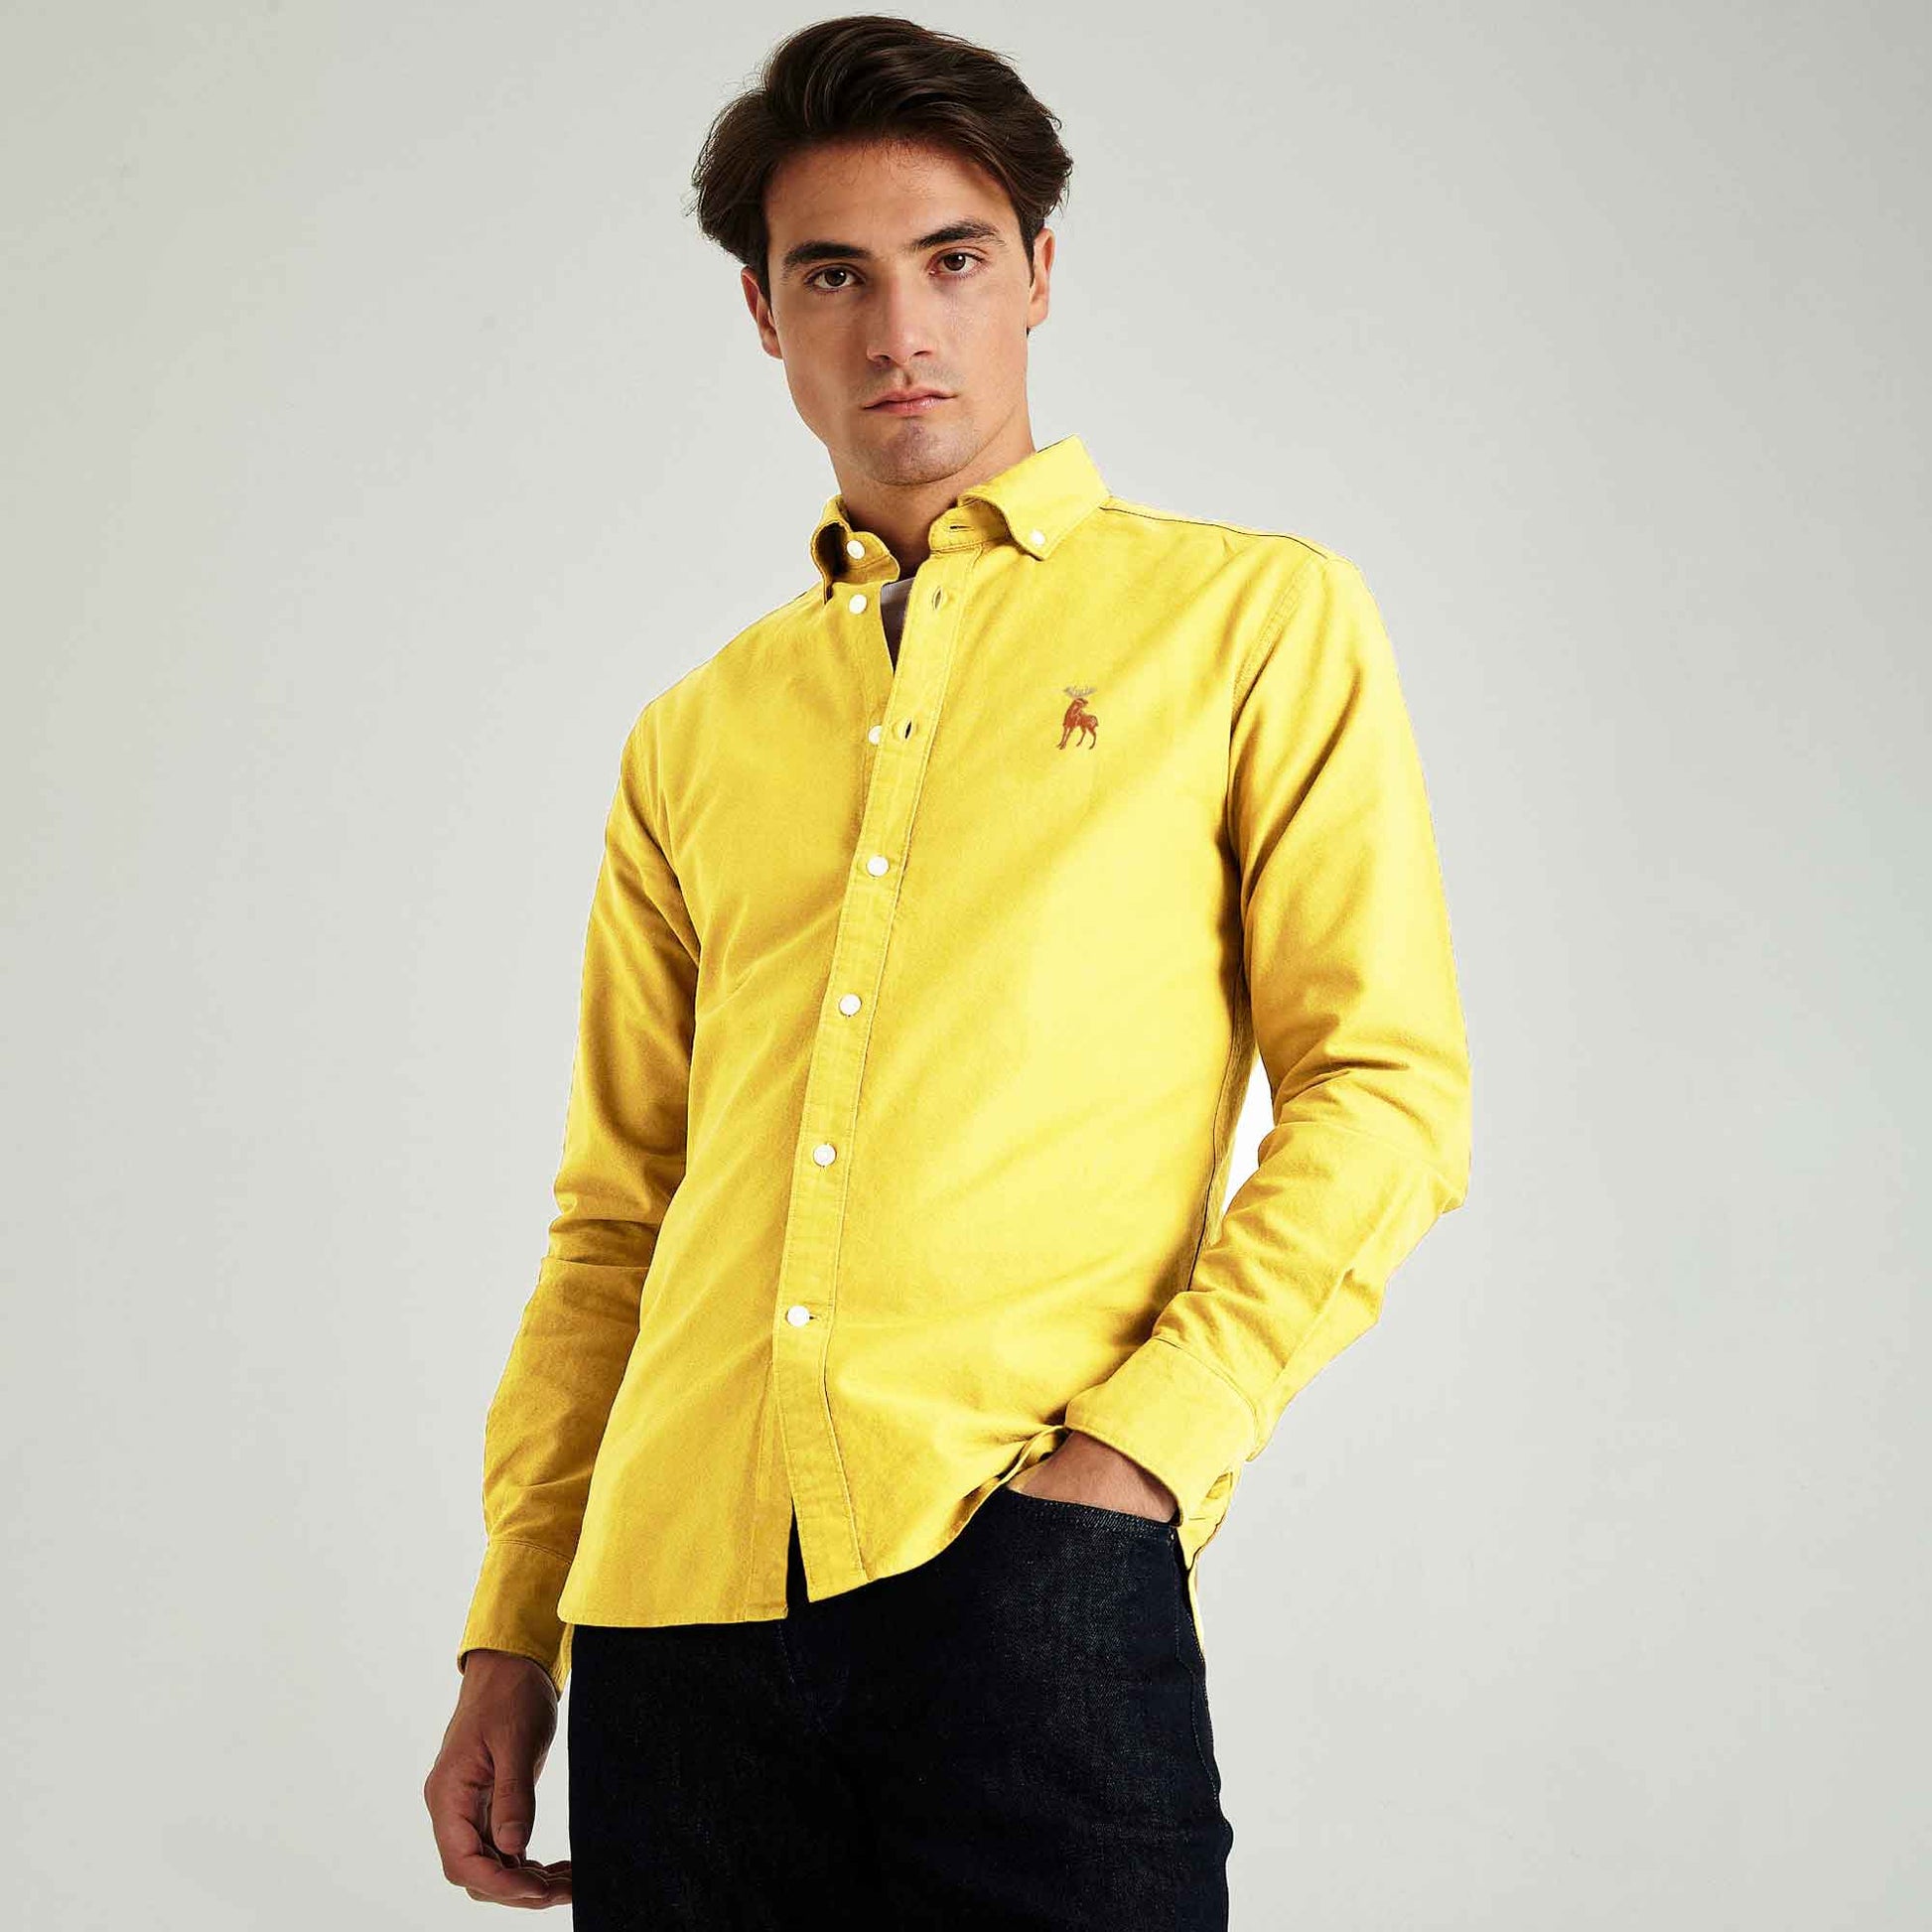 Polo Republica Men's Moose Embroidered Premium Casual Shirt Men's Casual Shirt Polo Republica Lime Yellow S 